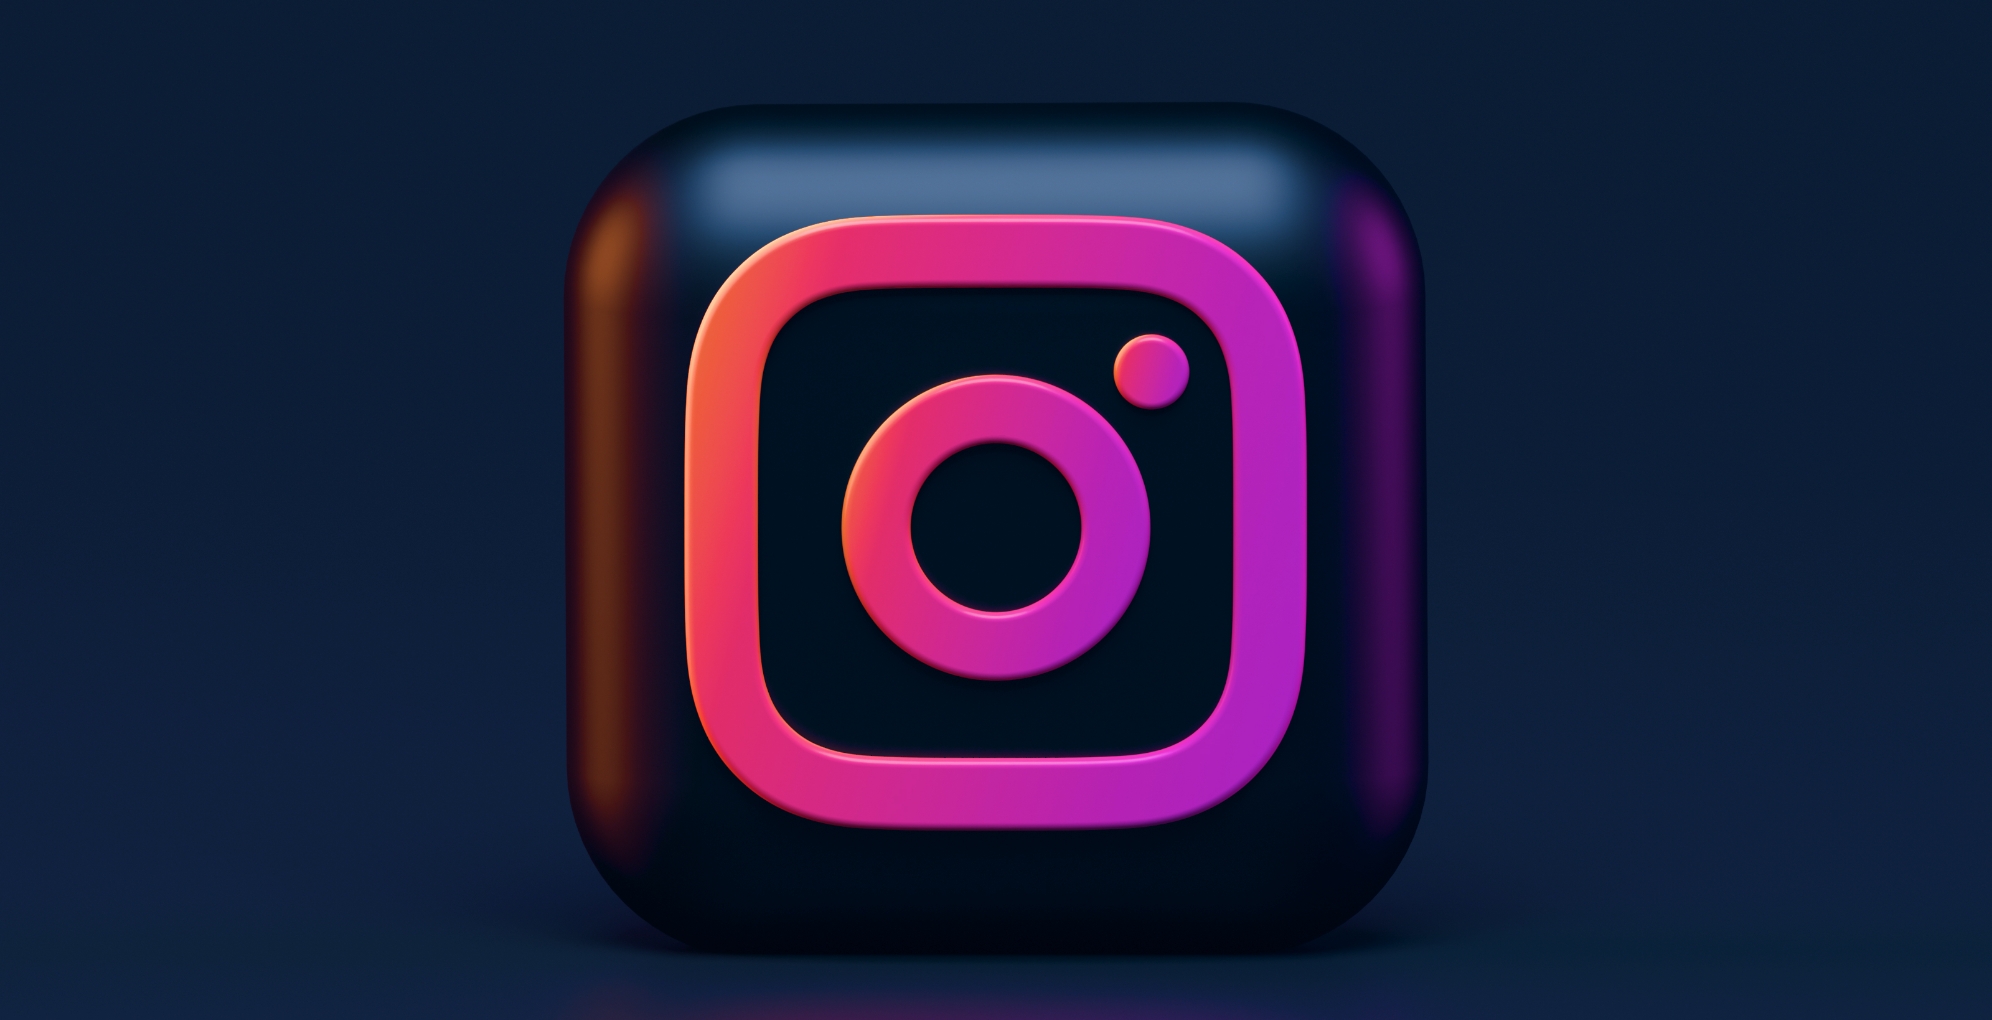 Logotipo cuadrado azul y rojo de Instagram.